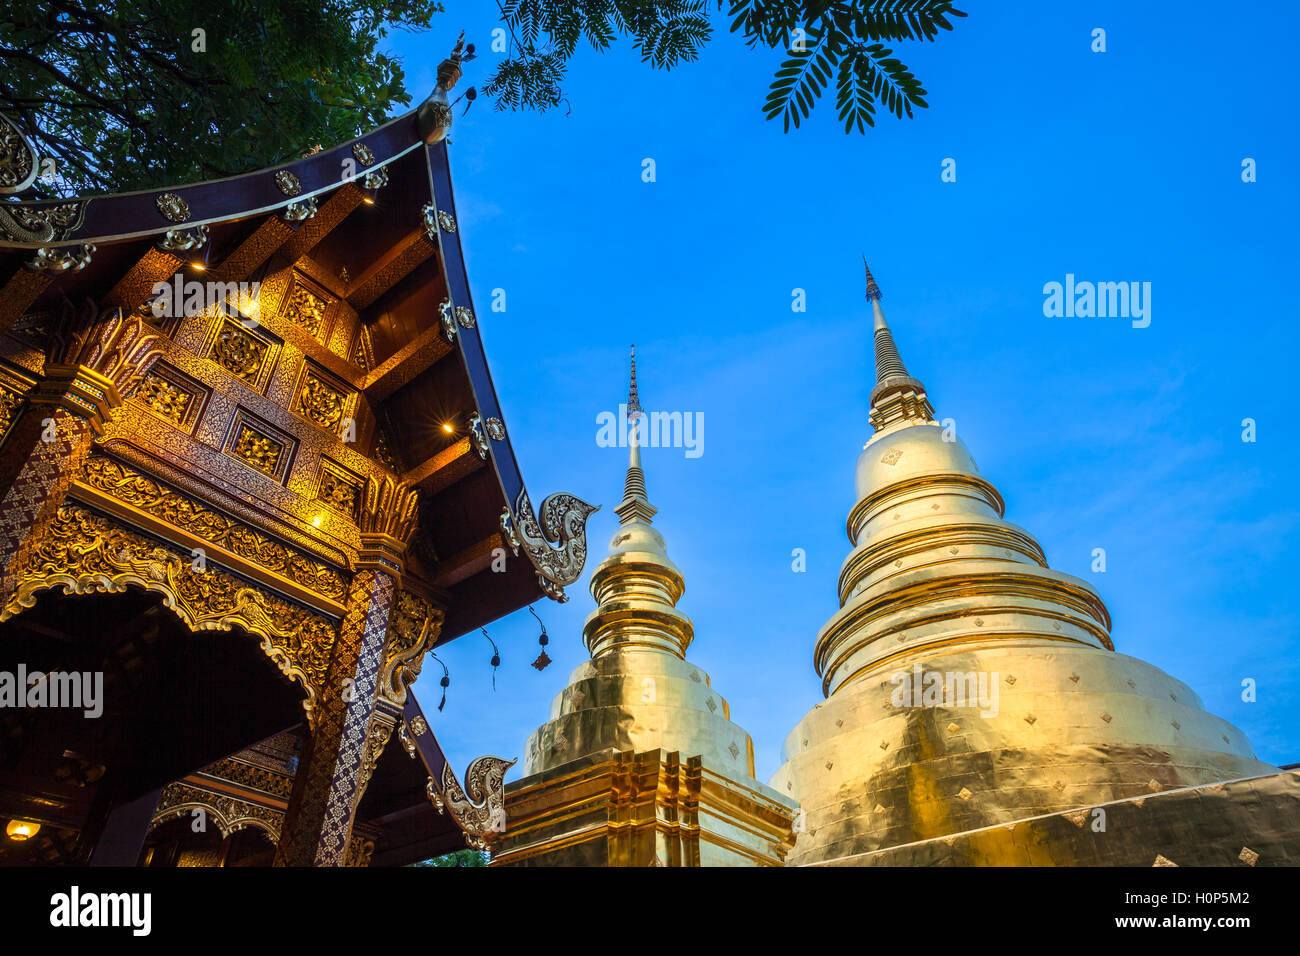 Ver el atardecer del templo Wat Phra Singh, el templo más venerado en Chiang Mai, Tailandia. Foto de stock